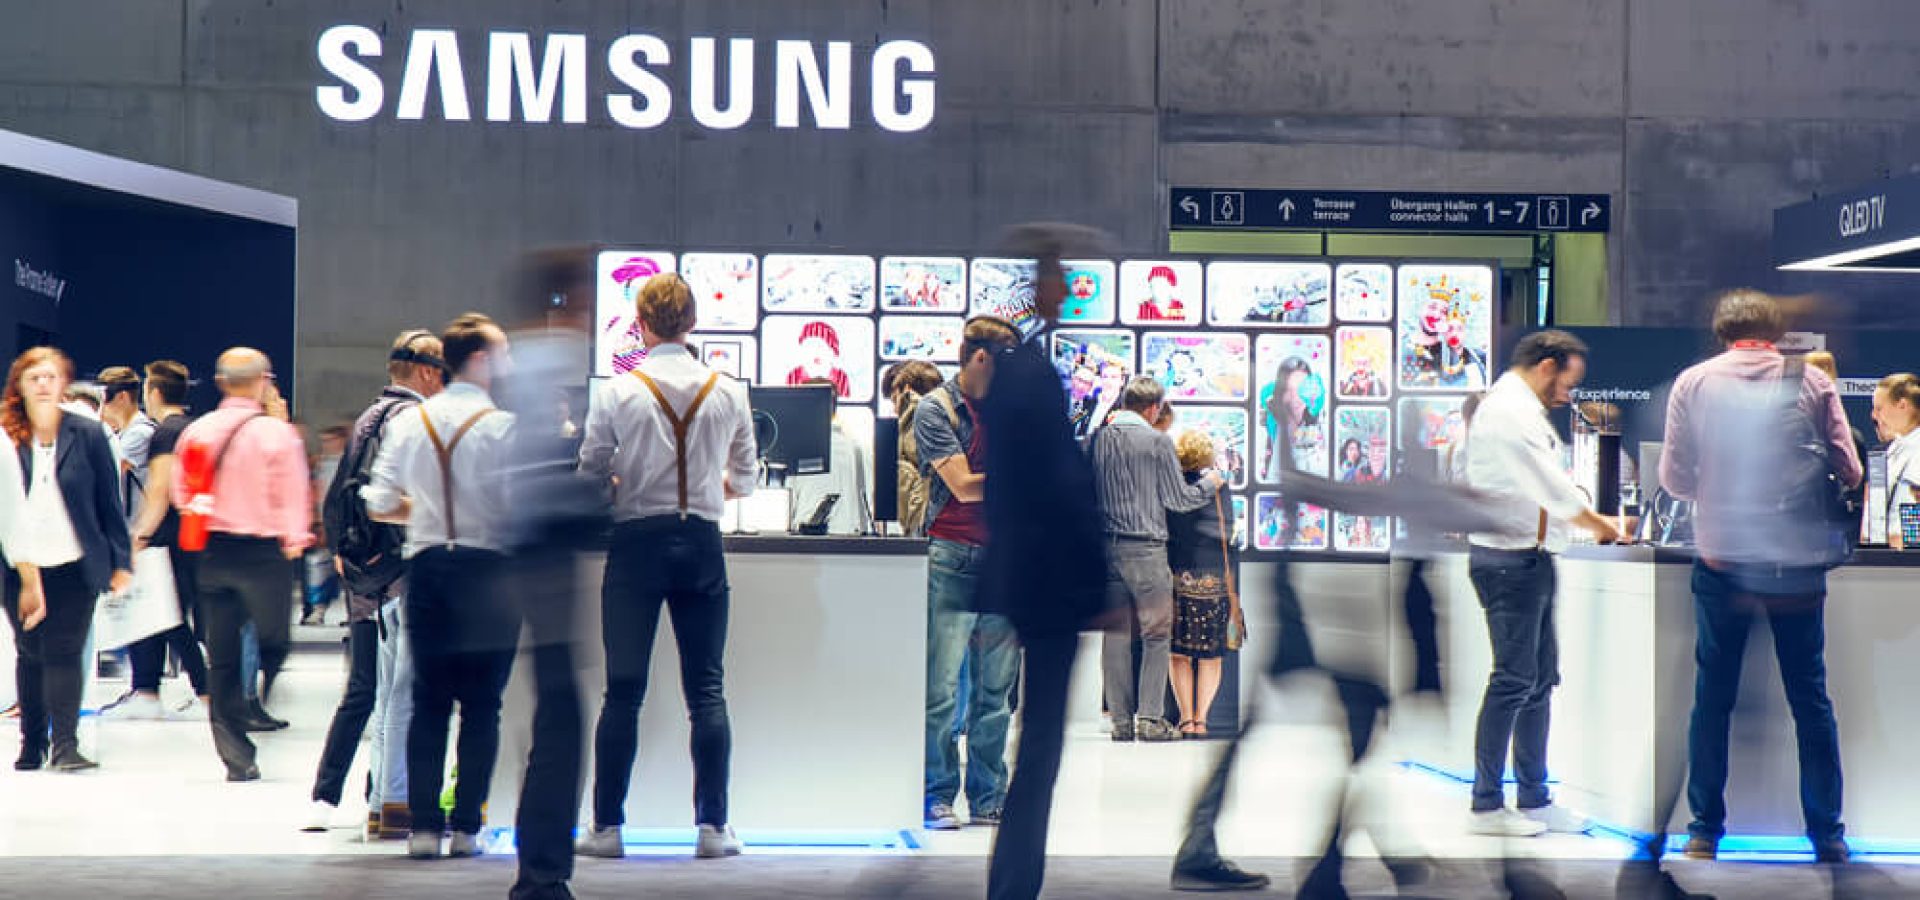 Samsung: Samsung exhibition pavilion.